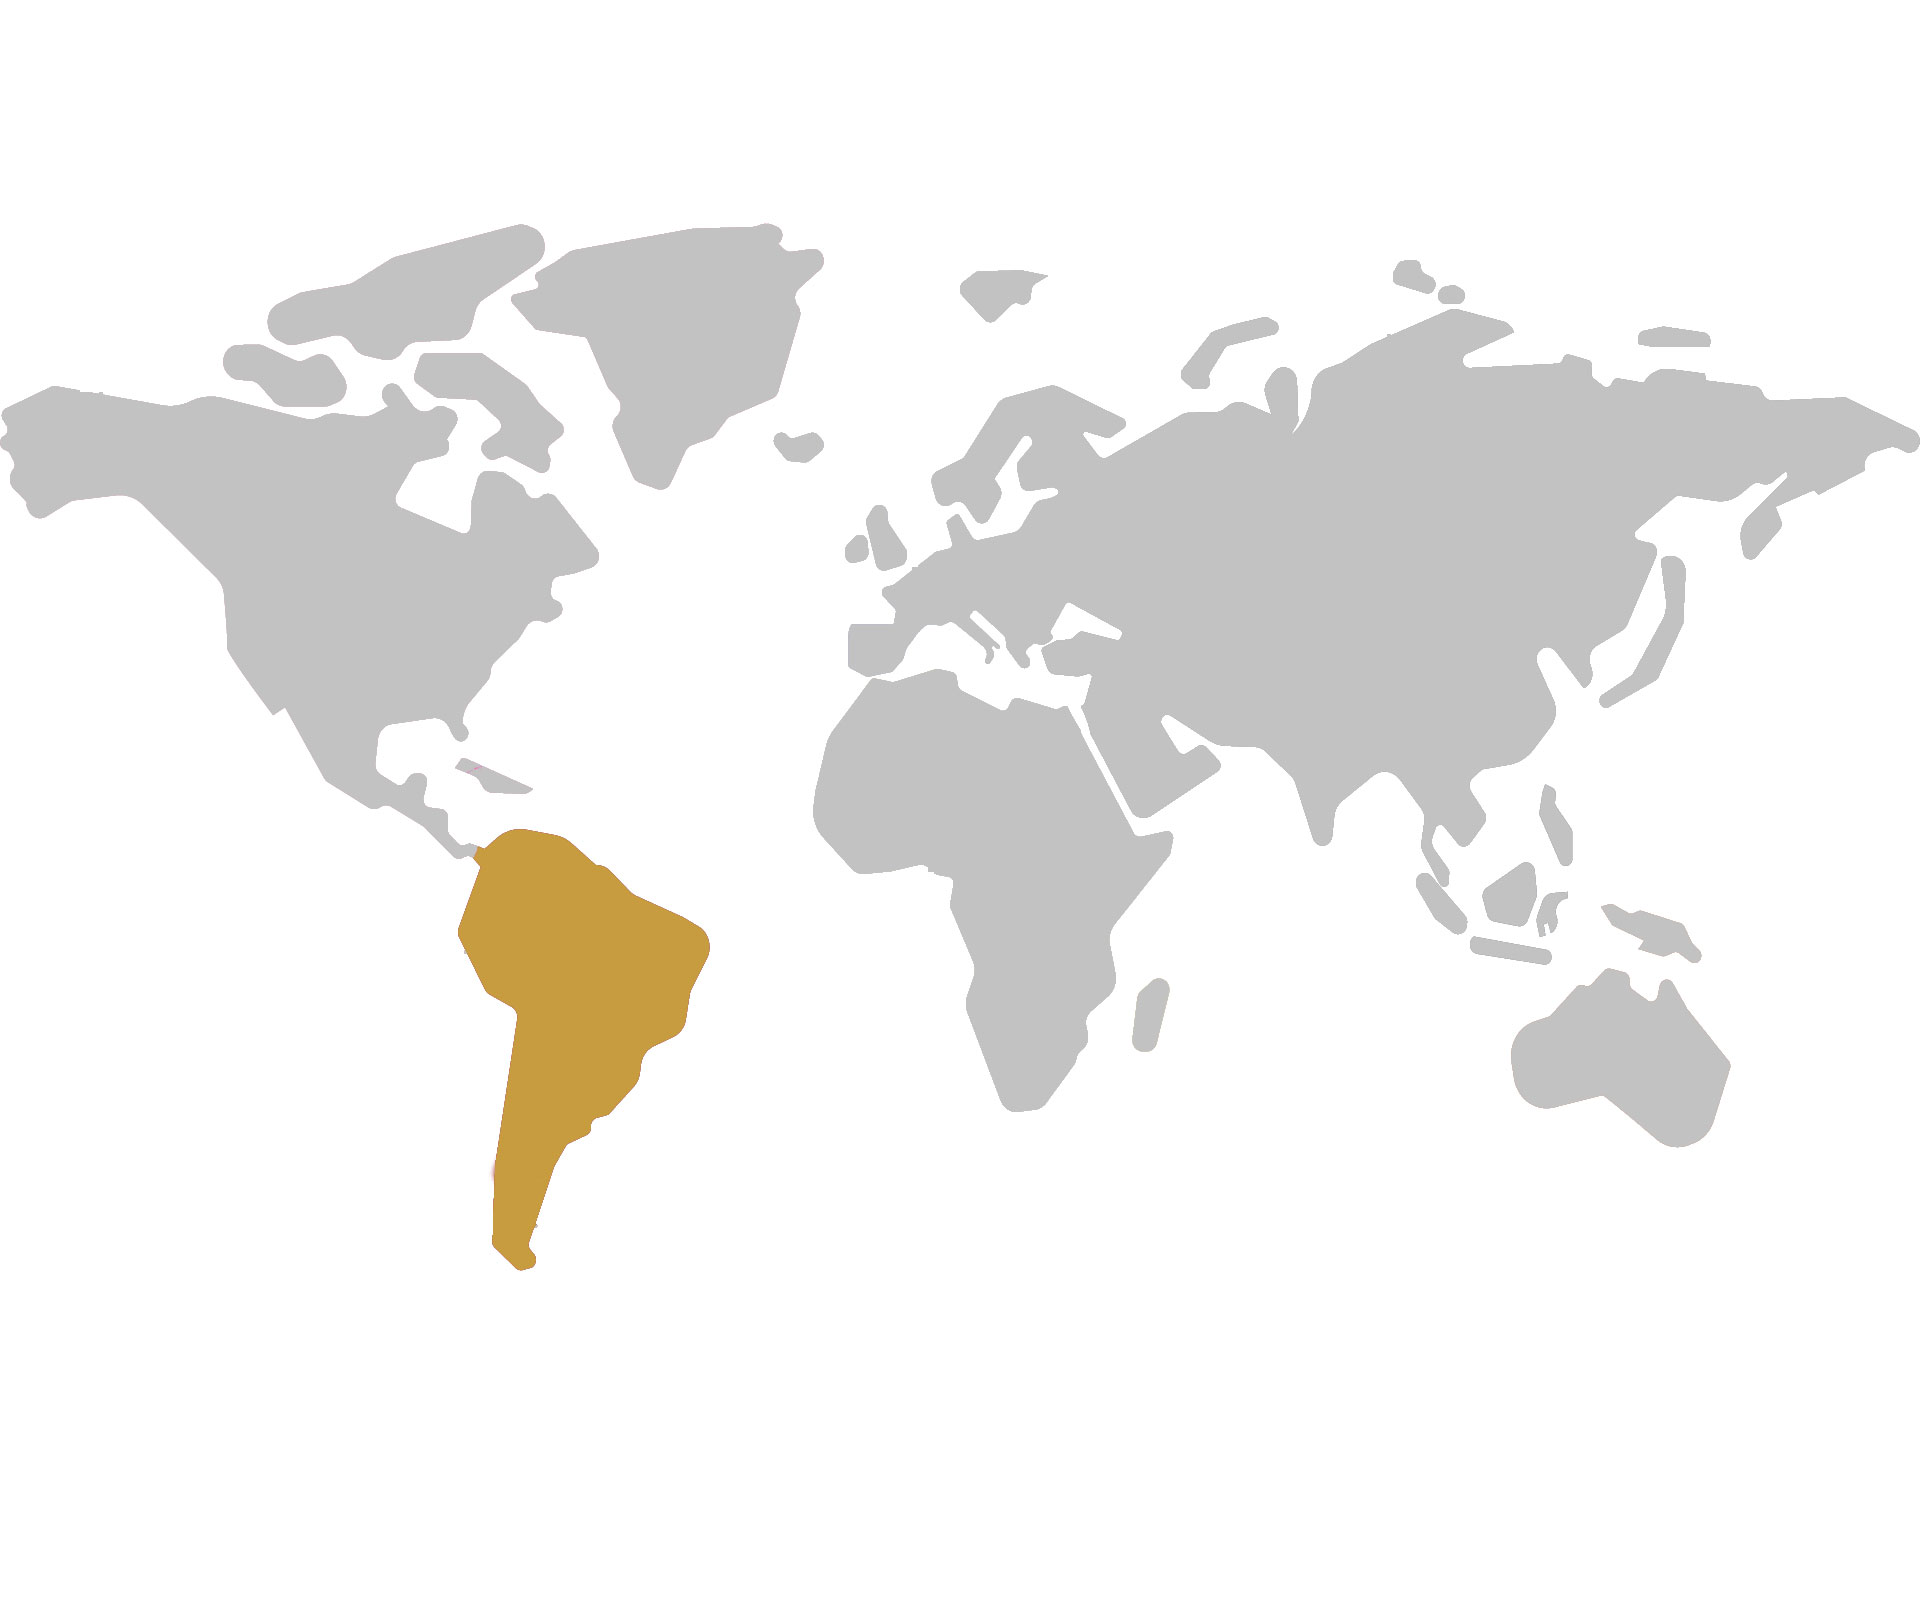 Dél-Amerika hivatalos forgalmazói
